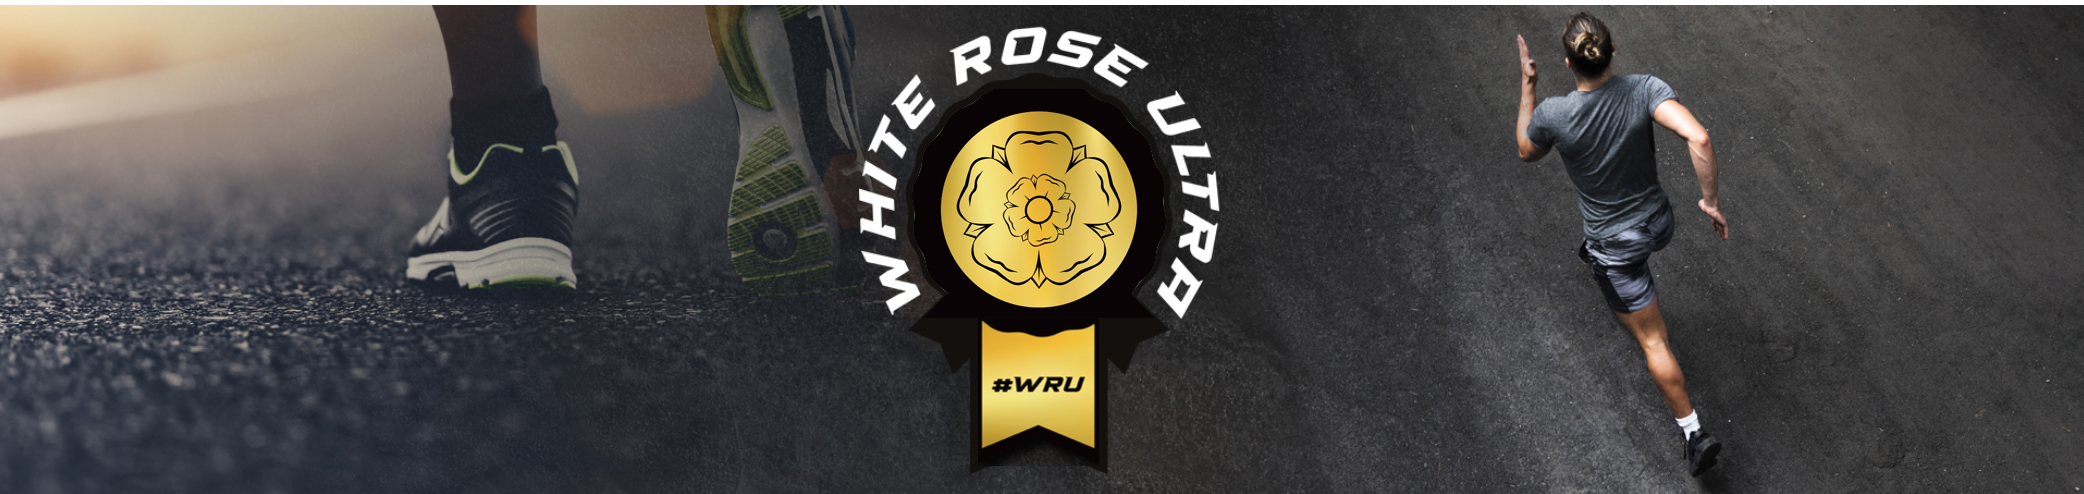 White Rose Ultra